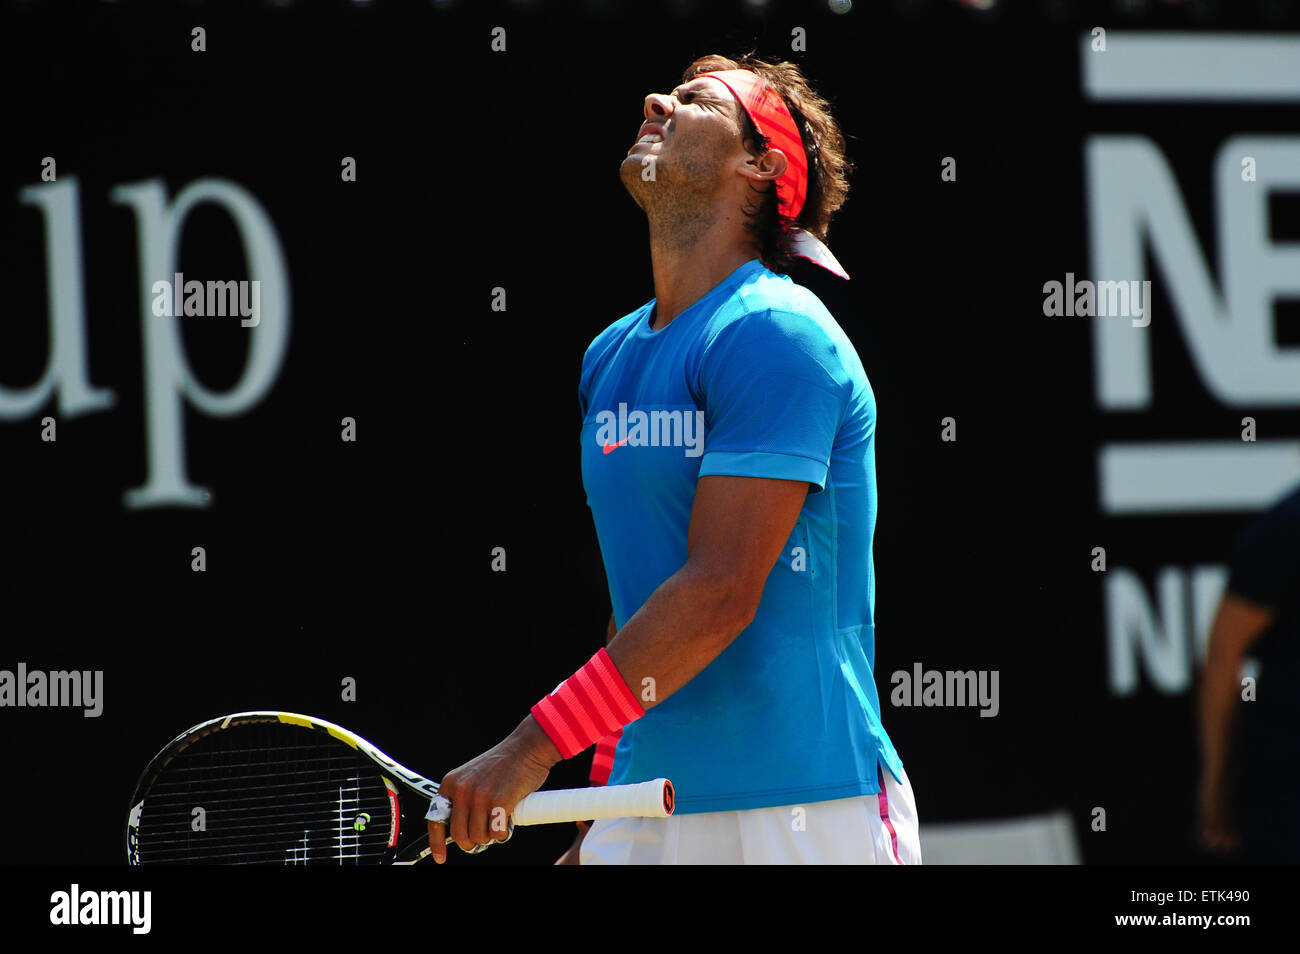 Stuttgart, Germania. 14 Giugno, 2015. Rafael Nadal deluso durante la Mercedes Cup finale contro Viktor Troicki a Stoccarda il 14 giugno 2015. Foto: Miroslav Dakov/ Alamy Live News Foto Stock